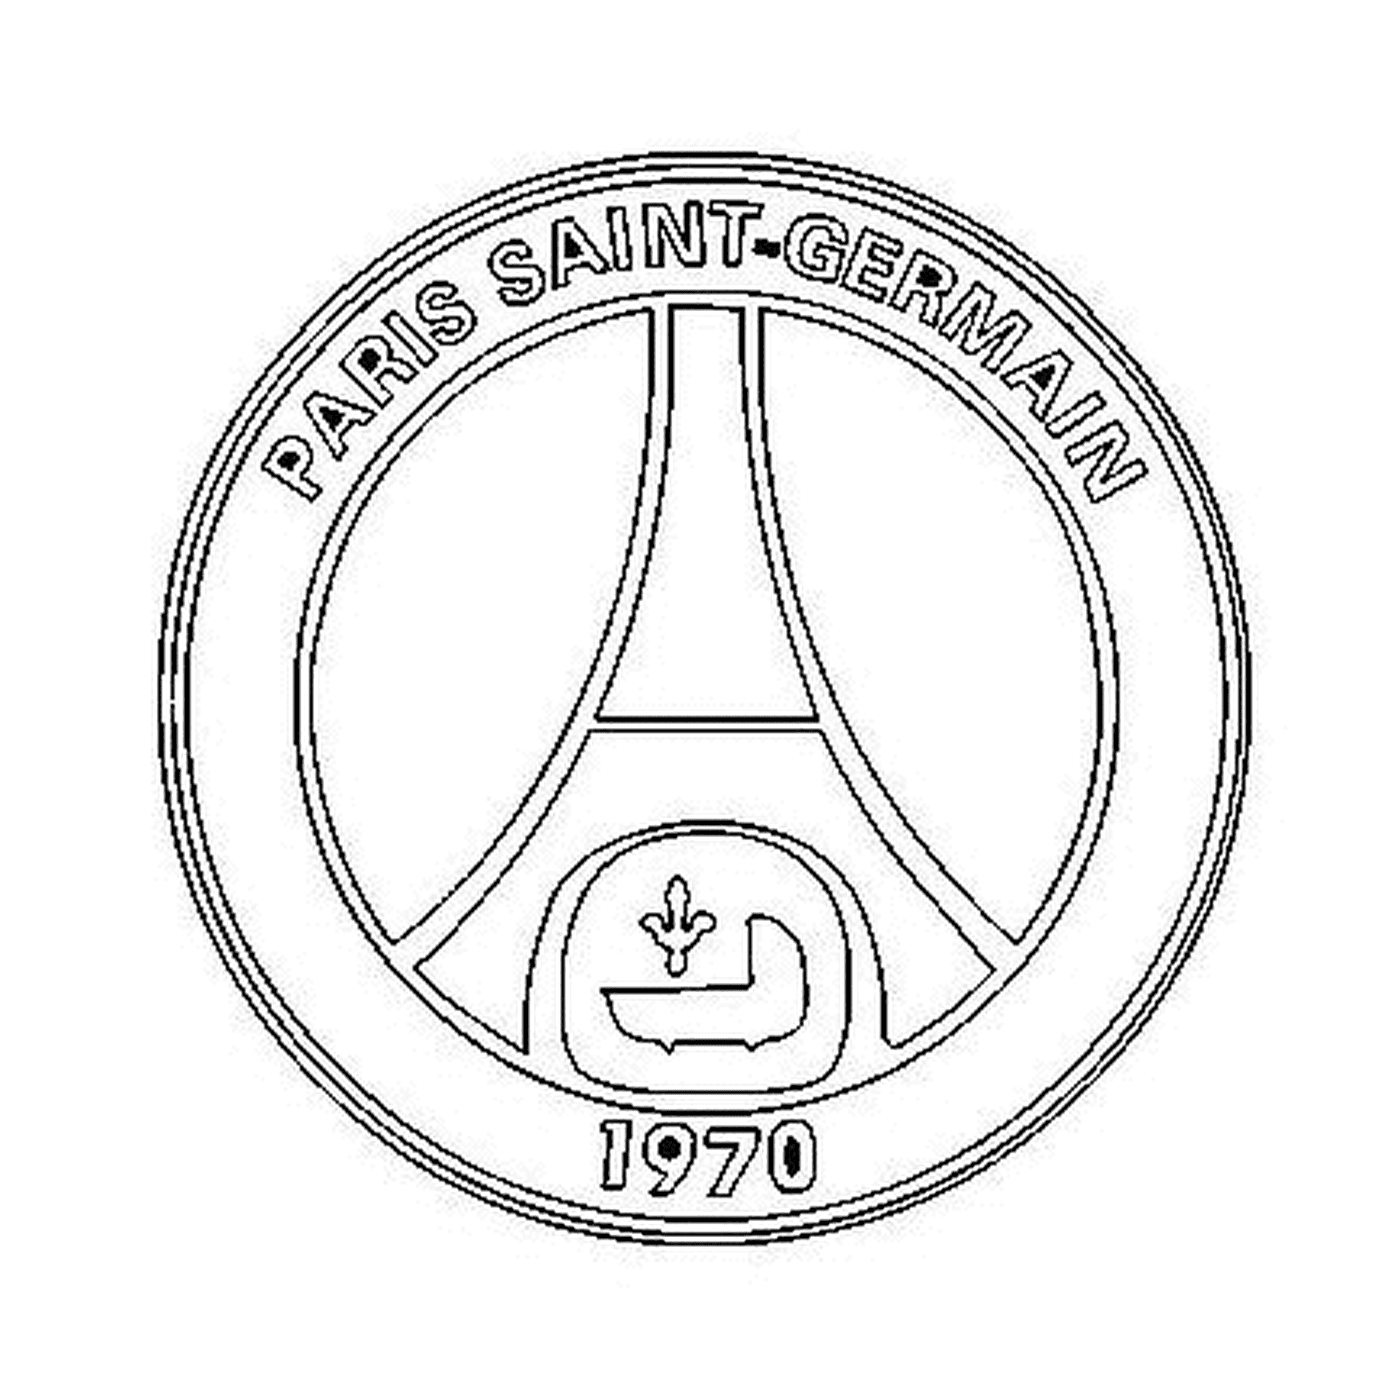   Logo du Paris Saint-Germain 